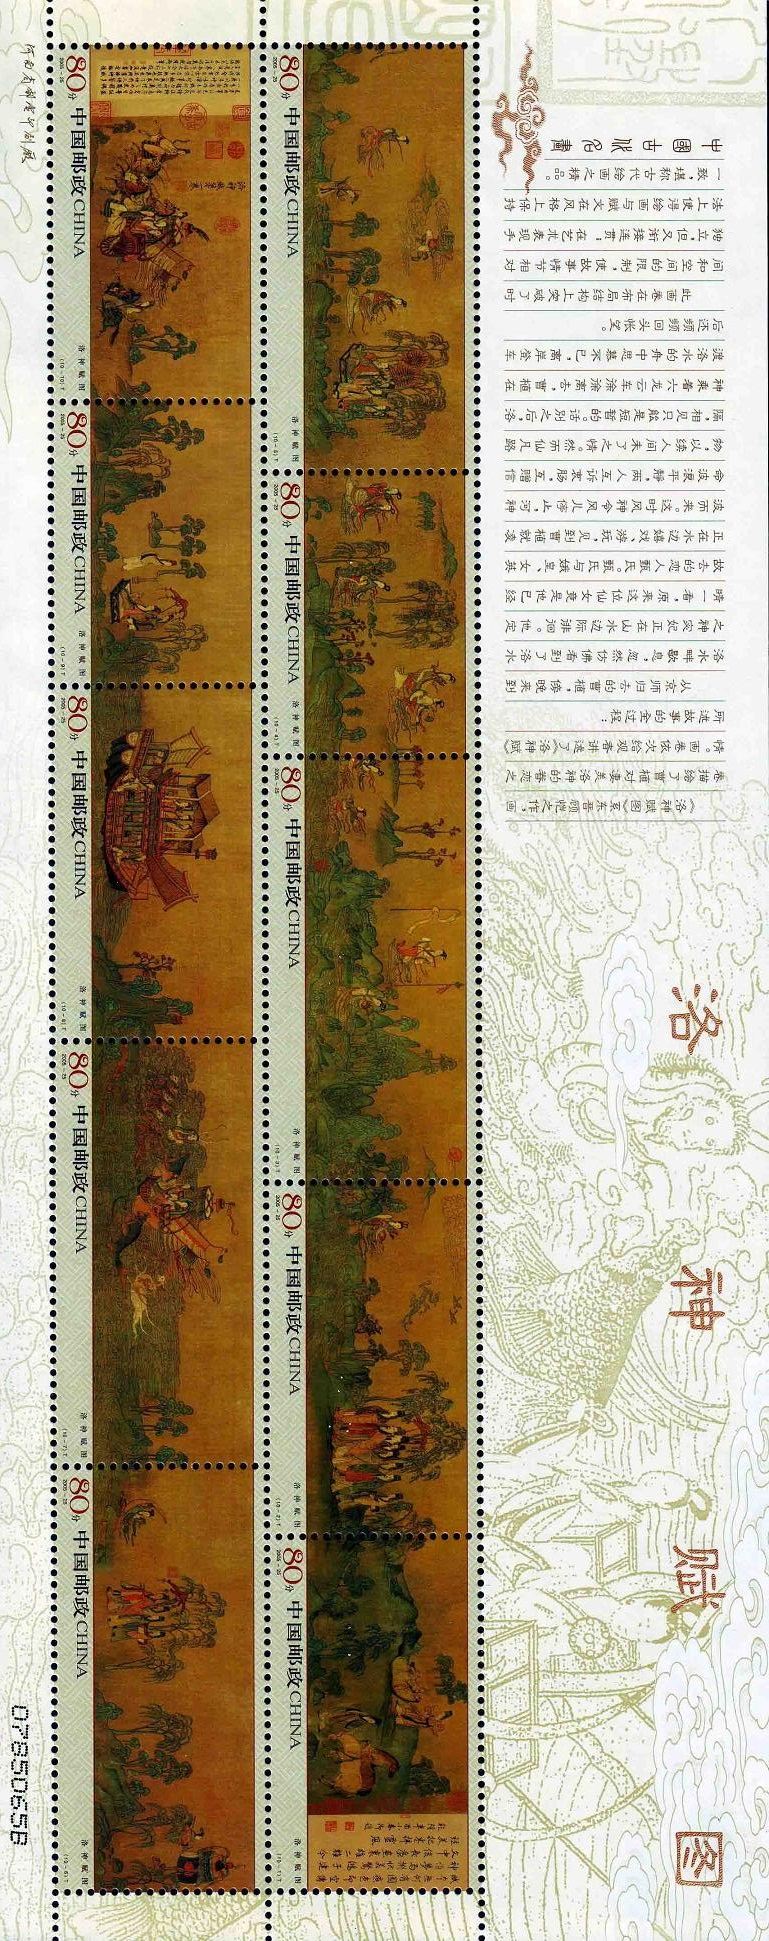 方寸品珍邮：2005年度最佳邮票和优秀邮票赏析